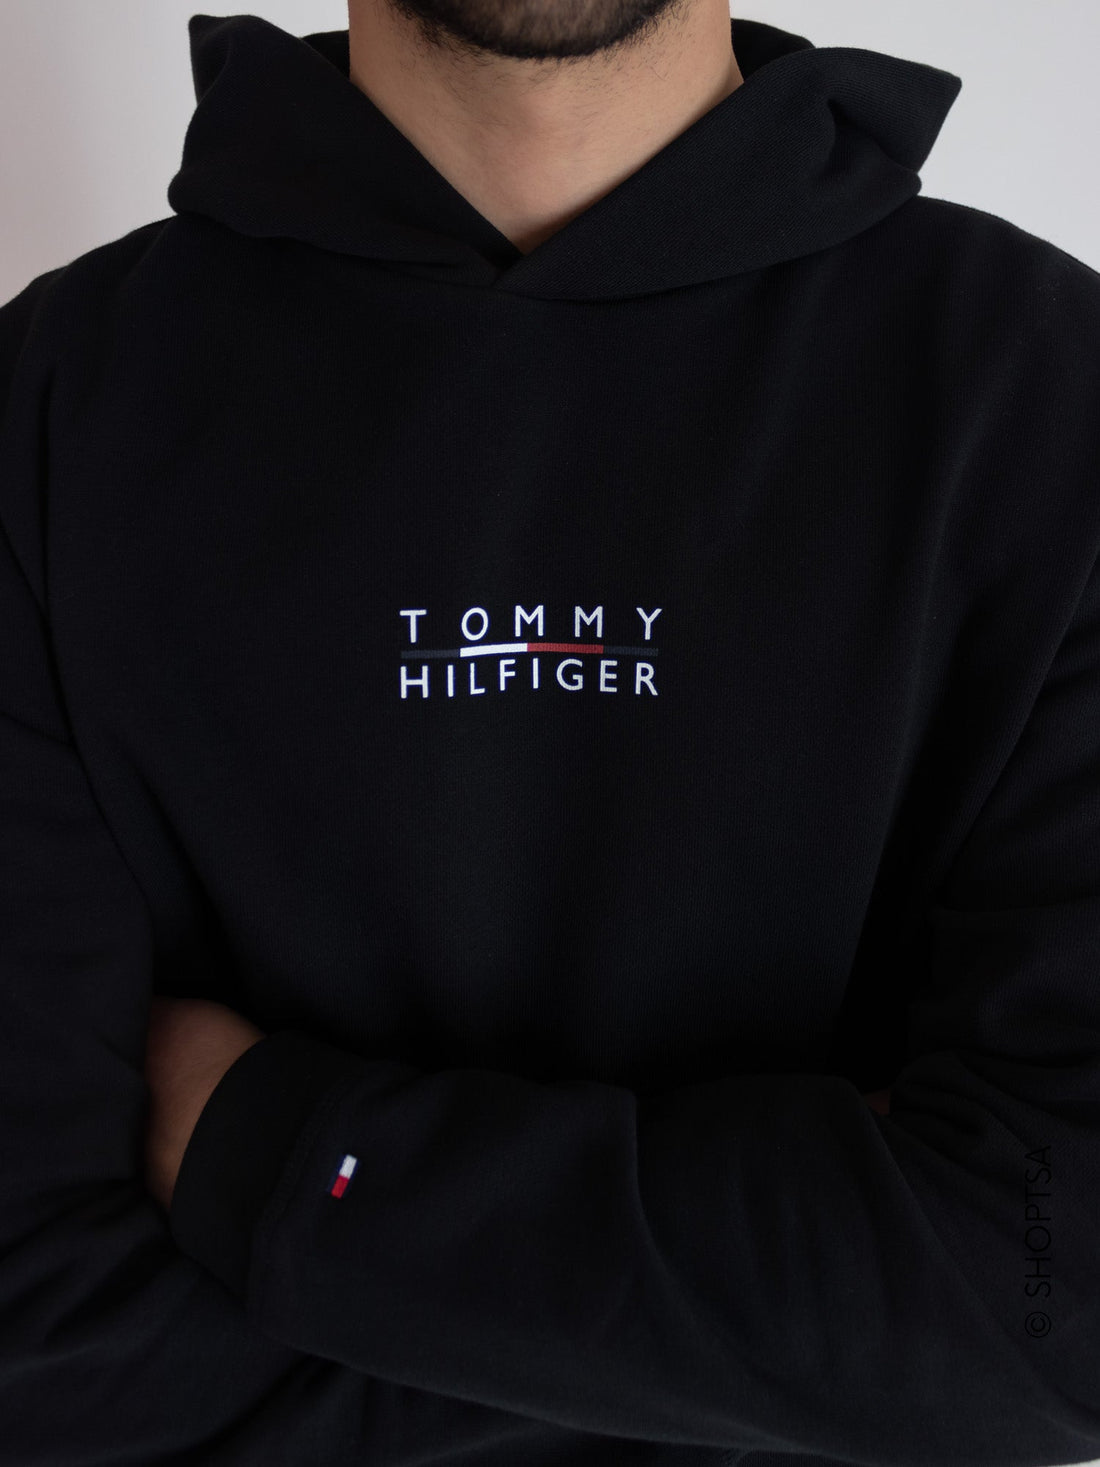 Tommy Hilfiger cotton flex sweatshirt